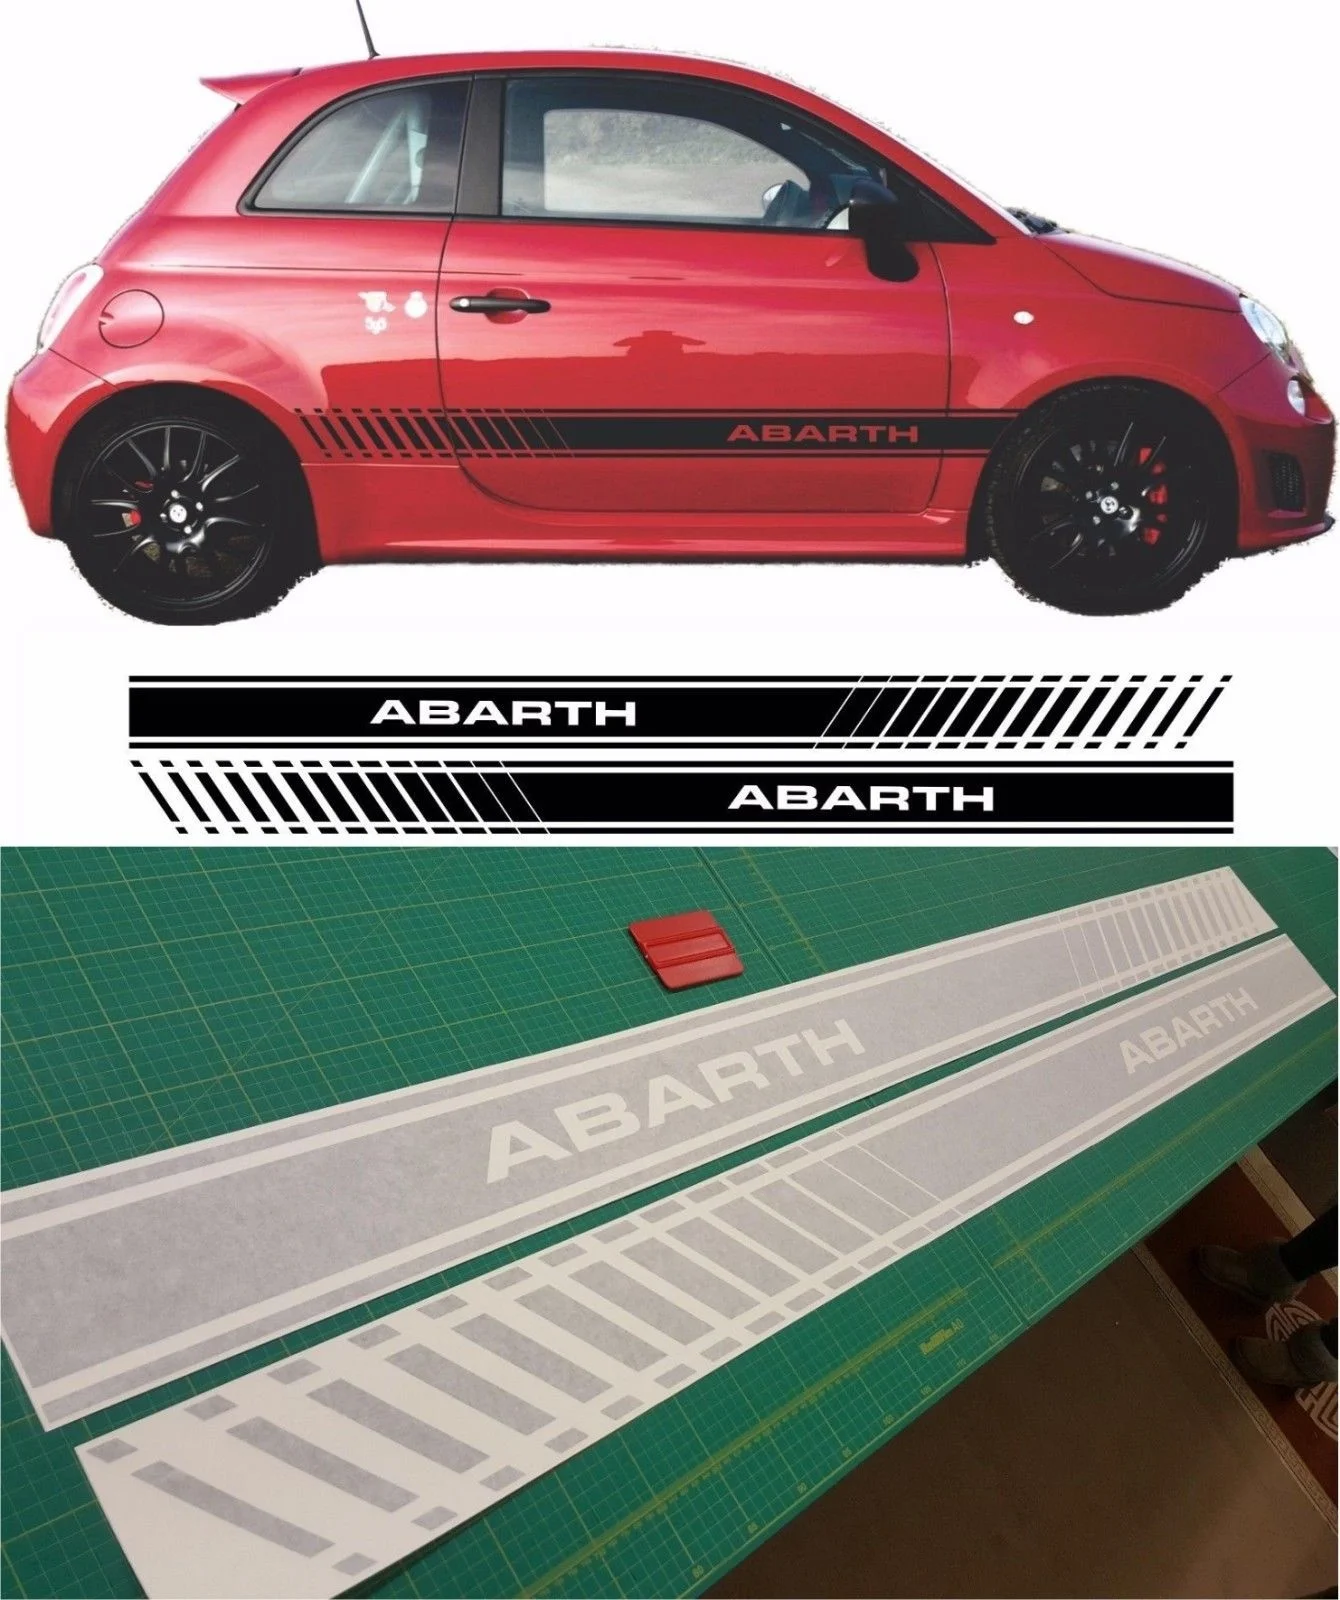 

Для 1 комплекта/2 шт. Fiat 500 595 abarth графические наклейки с боковыми полосками фотообои любого цвета Стайлинг автомобиля